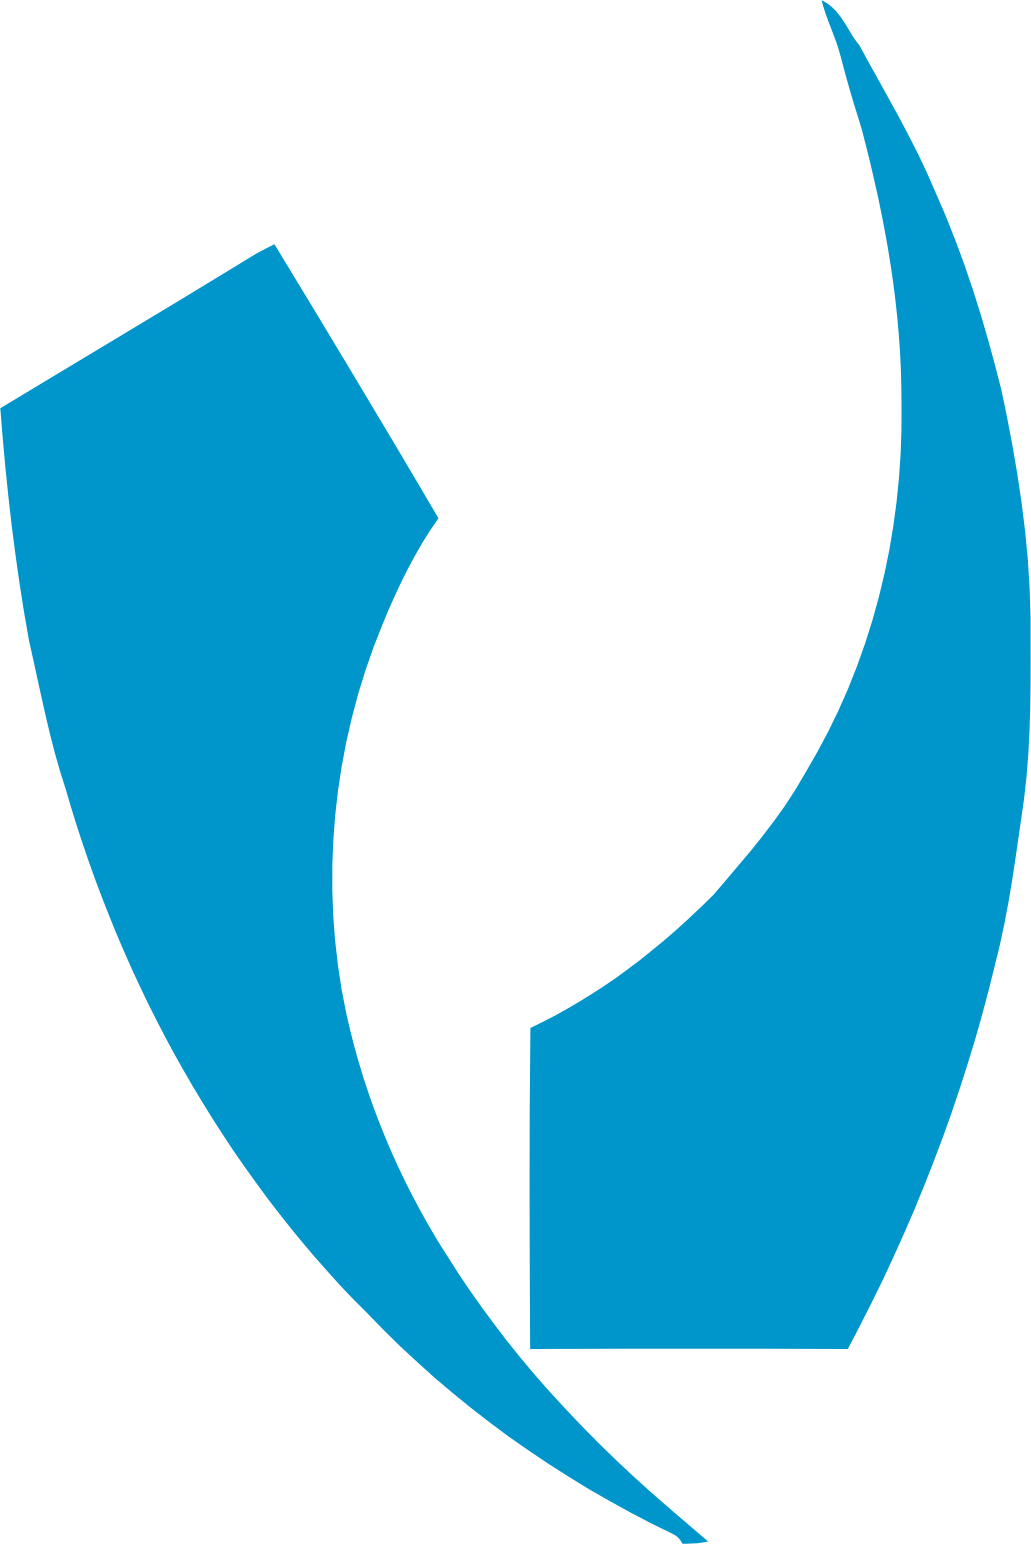 Davis Commodities logo (PNG transparent)